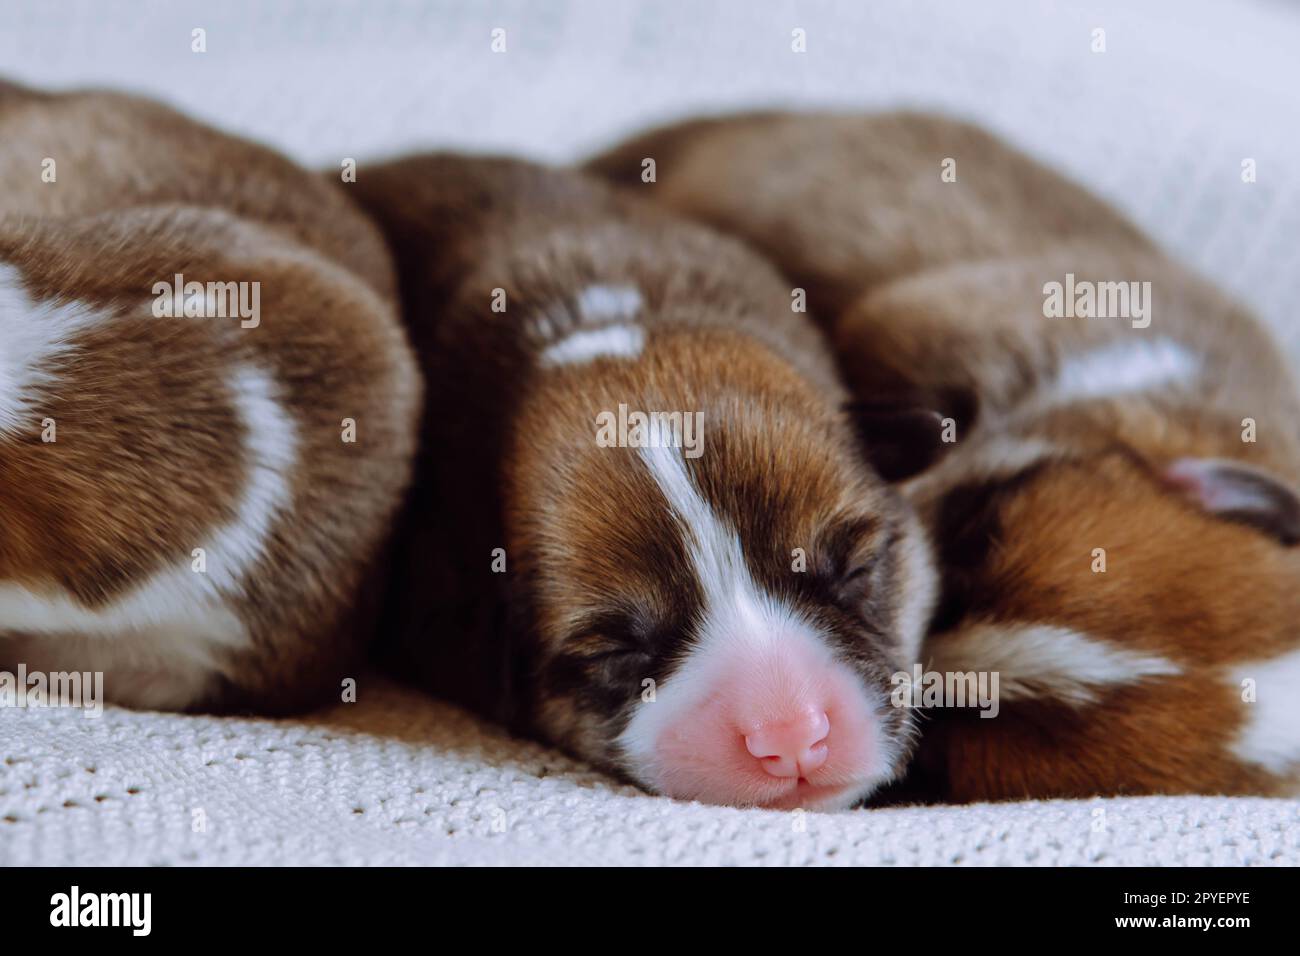 Trois chiots corgi gallois bordés de poils multicolores marron, blanc et noir dormant ensemble sur une couverture blanche en rangée Banque D'Images